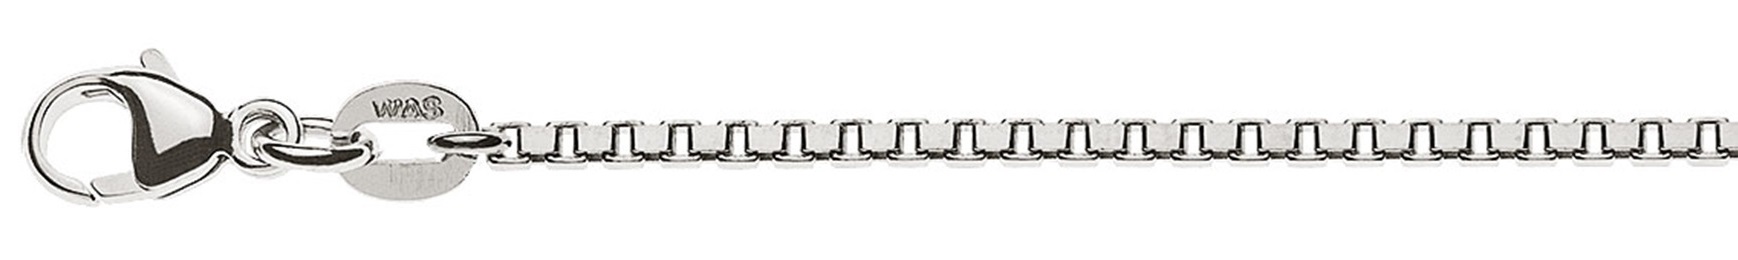 AURONOS Prestige Halskette Weissgold 18K Venezianerkette diamantiert 55cm 1.6mm